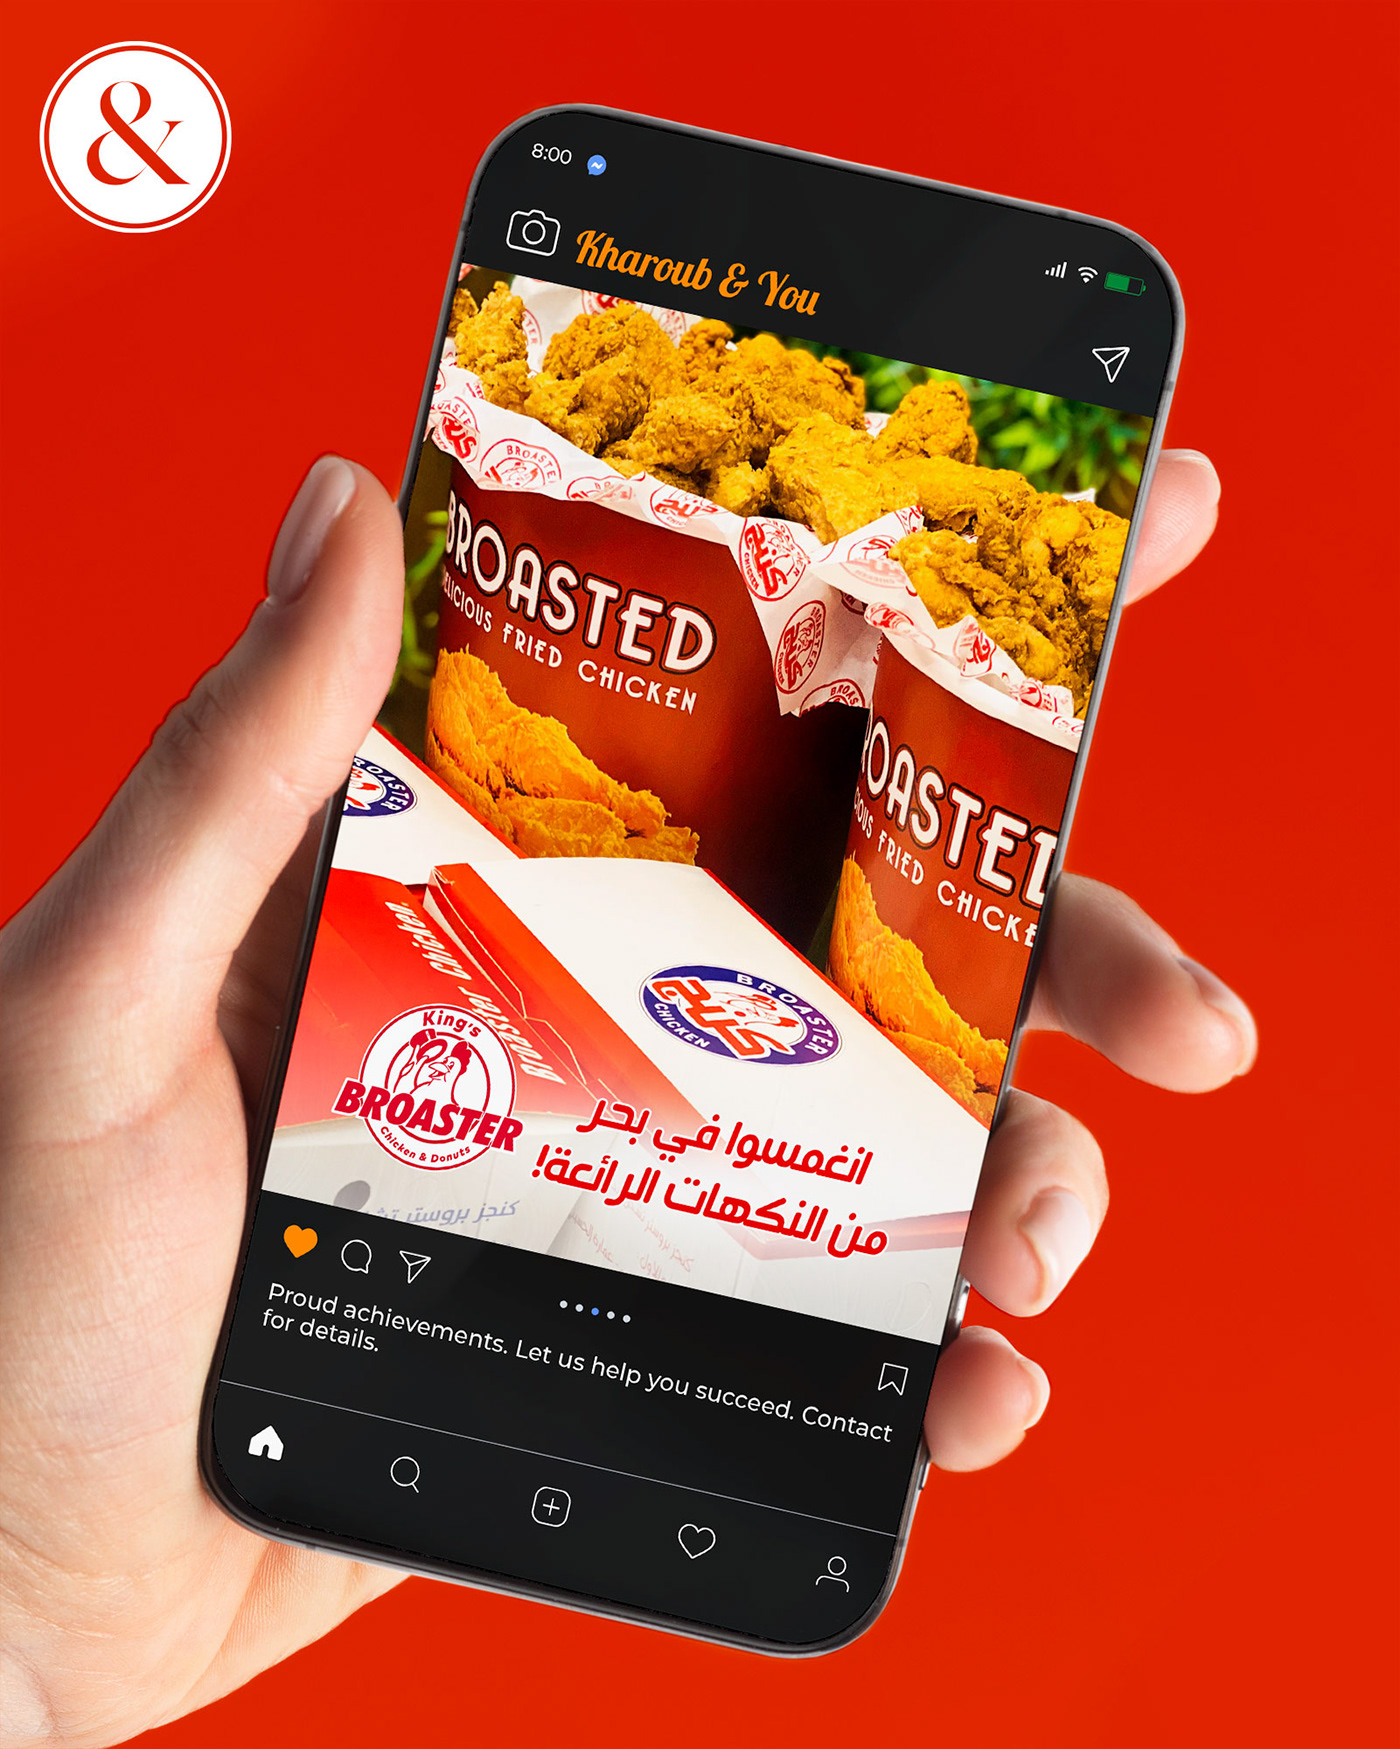 Broasted Chicken Social media post marketing   Advertising  brand identity design Socialmedia ads Graphic Designer visual identity